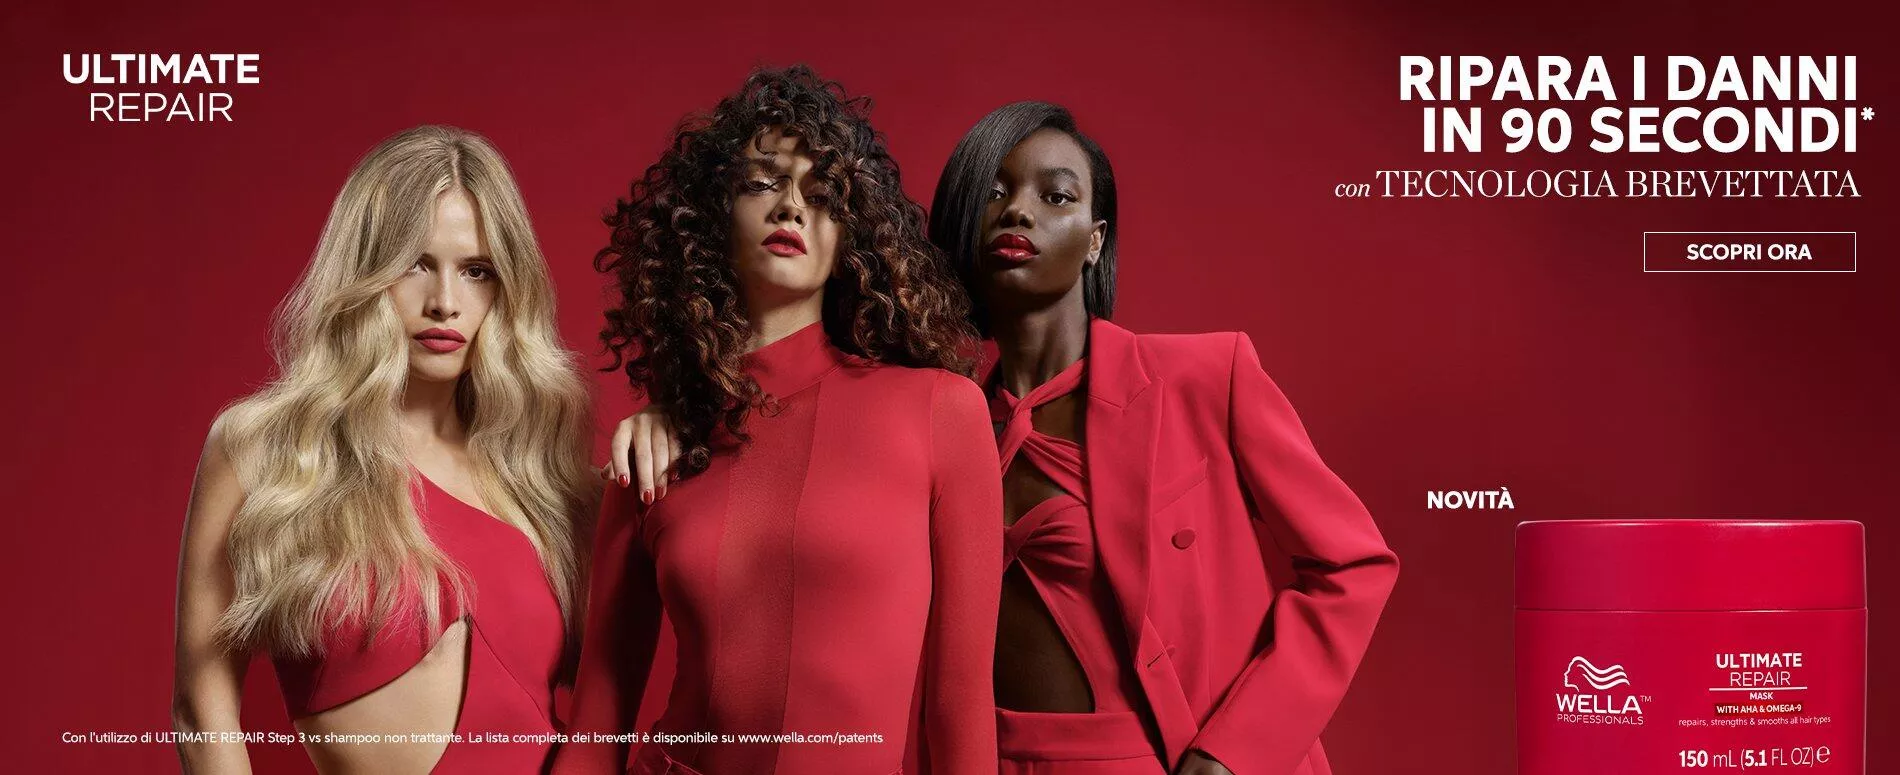 Immagine di 3 modelle vestite di rosso che si trovano accanto ad una maschera ultimate repair  di Wella Professionals, adatta a capelli danneggiati